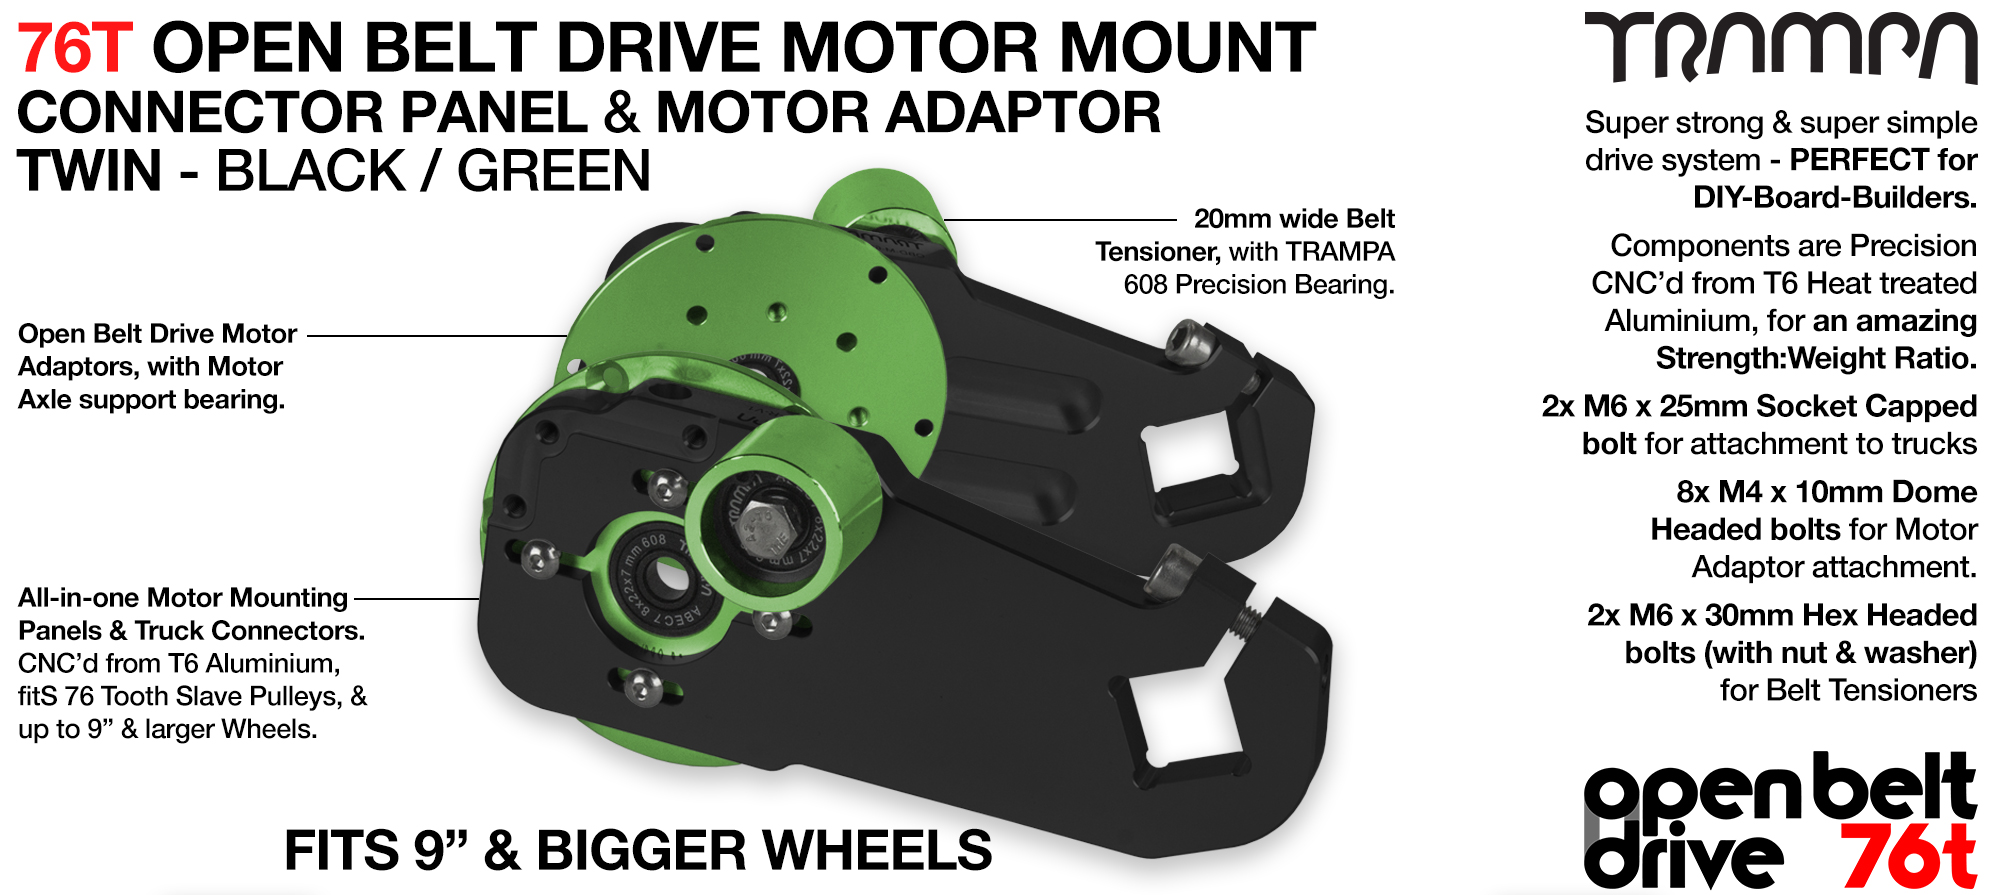 76T Open Belt Drive Motor Mount & Motor Adaptor - TWIN GREEN